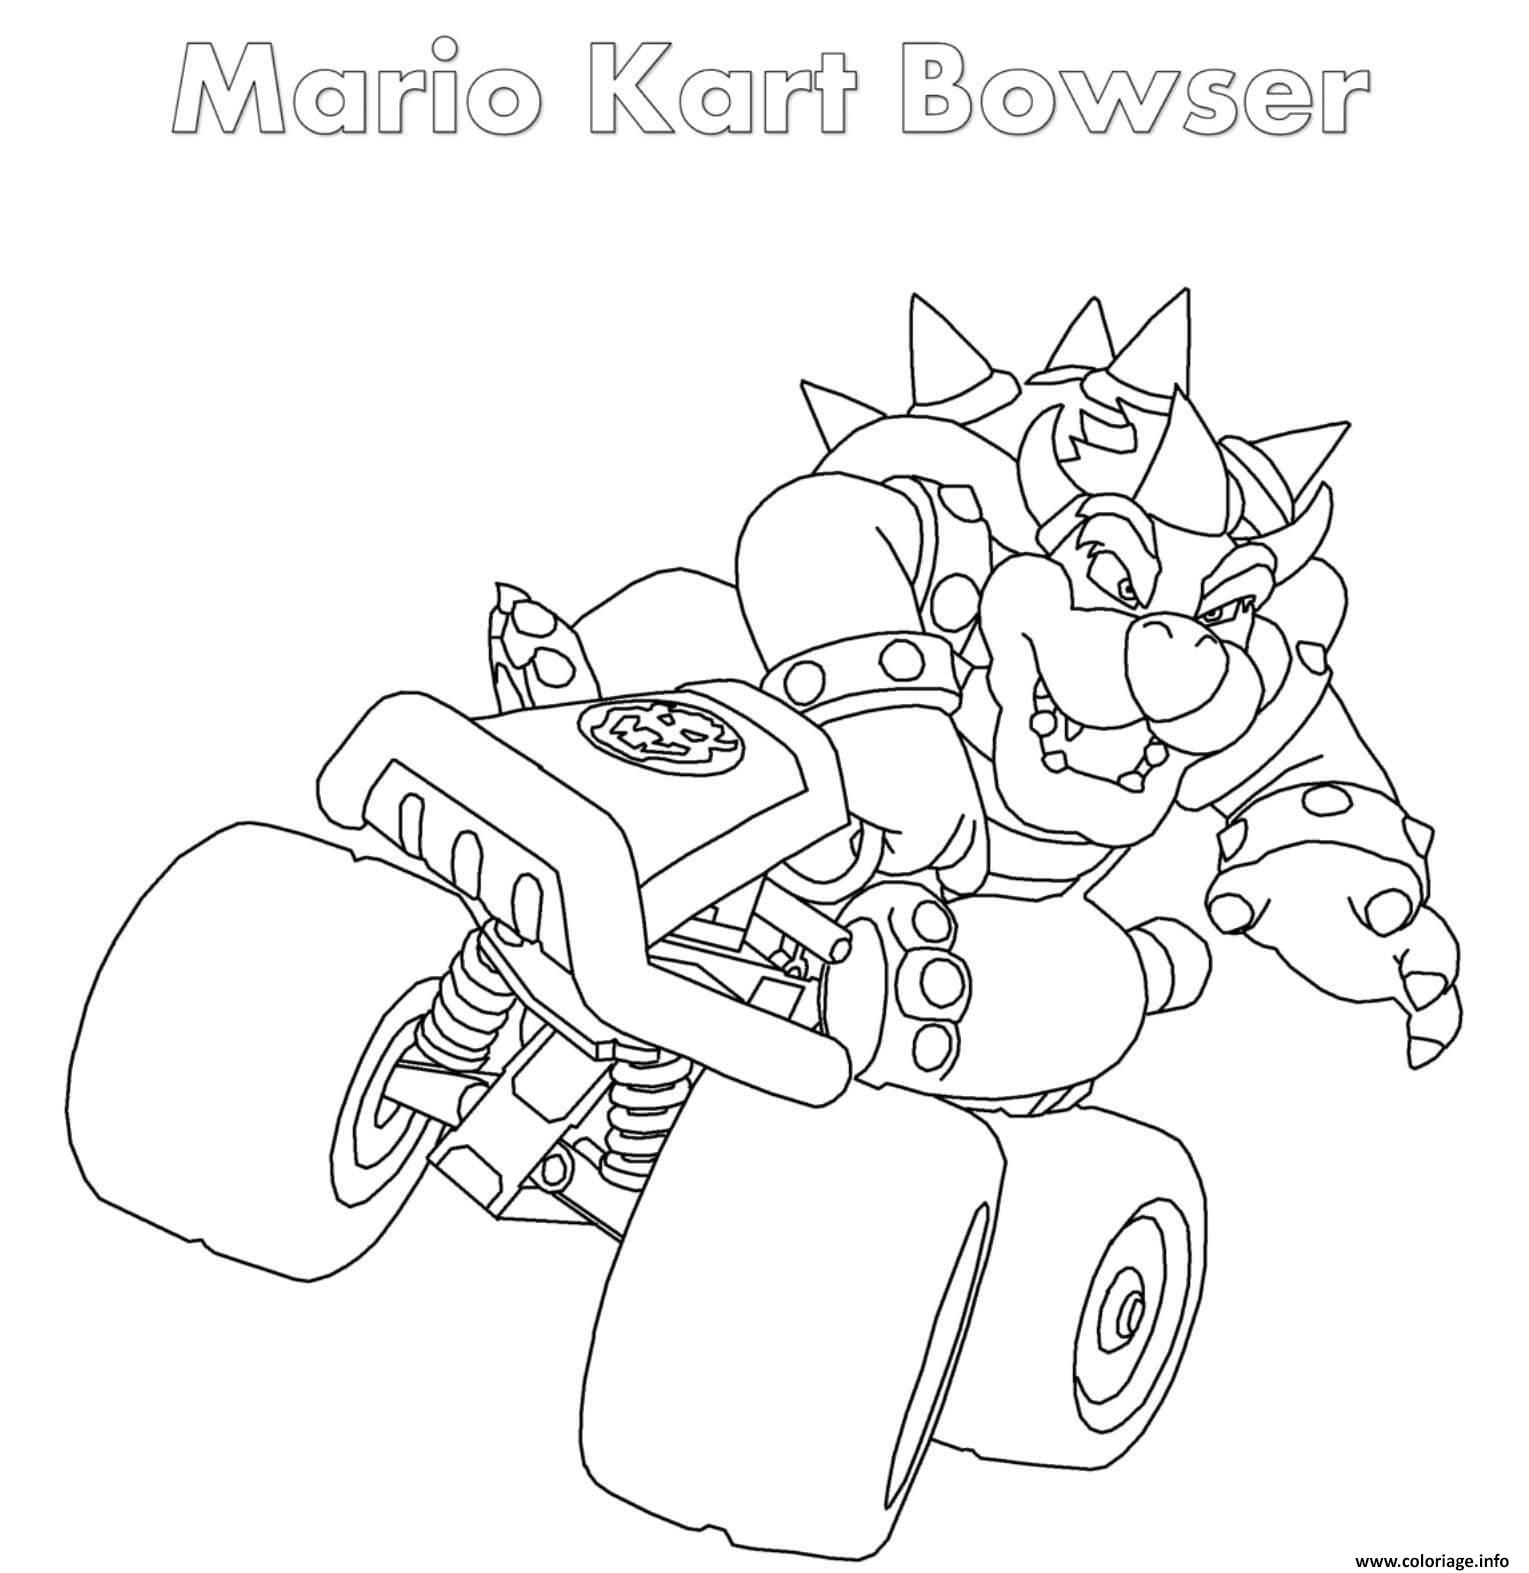 Dessin Bowser Mario Kart Coloriage Gratuit à Imprimer